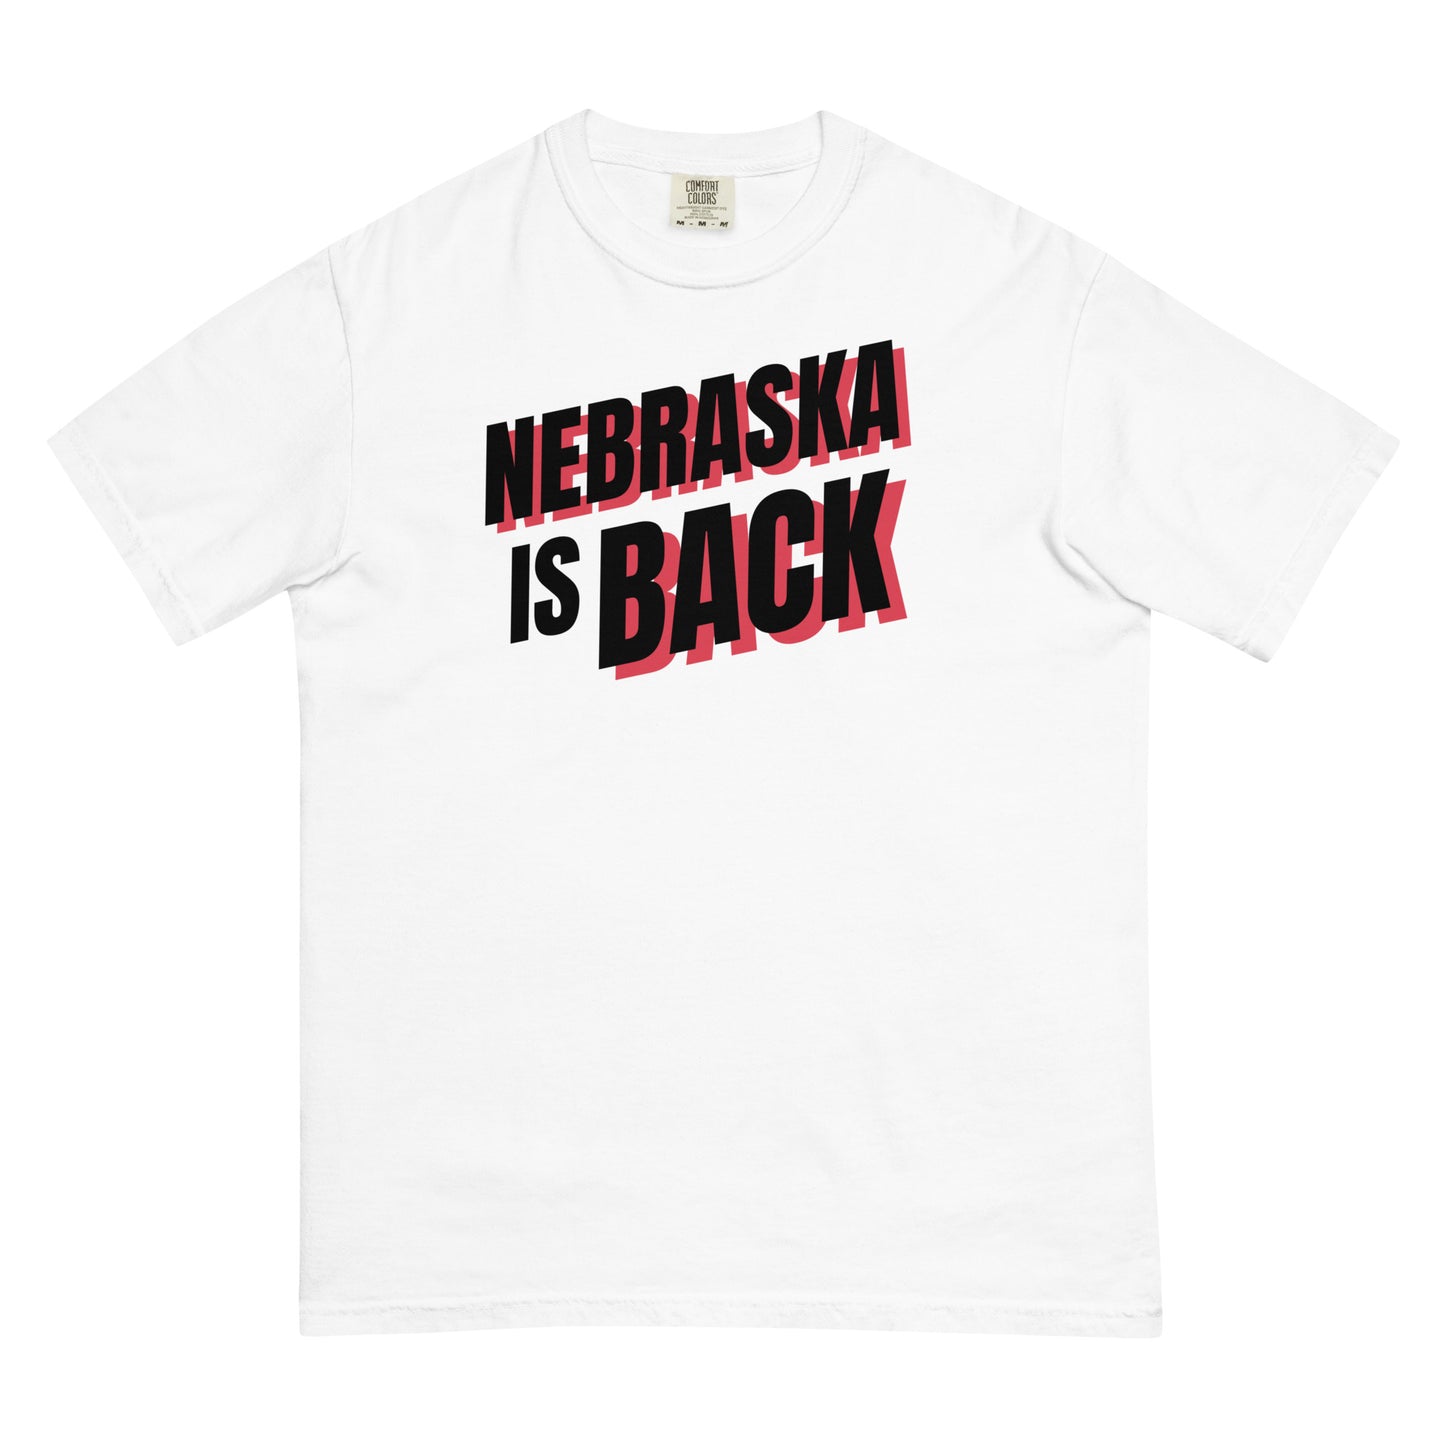 Nebraska is Back T-shirt